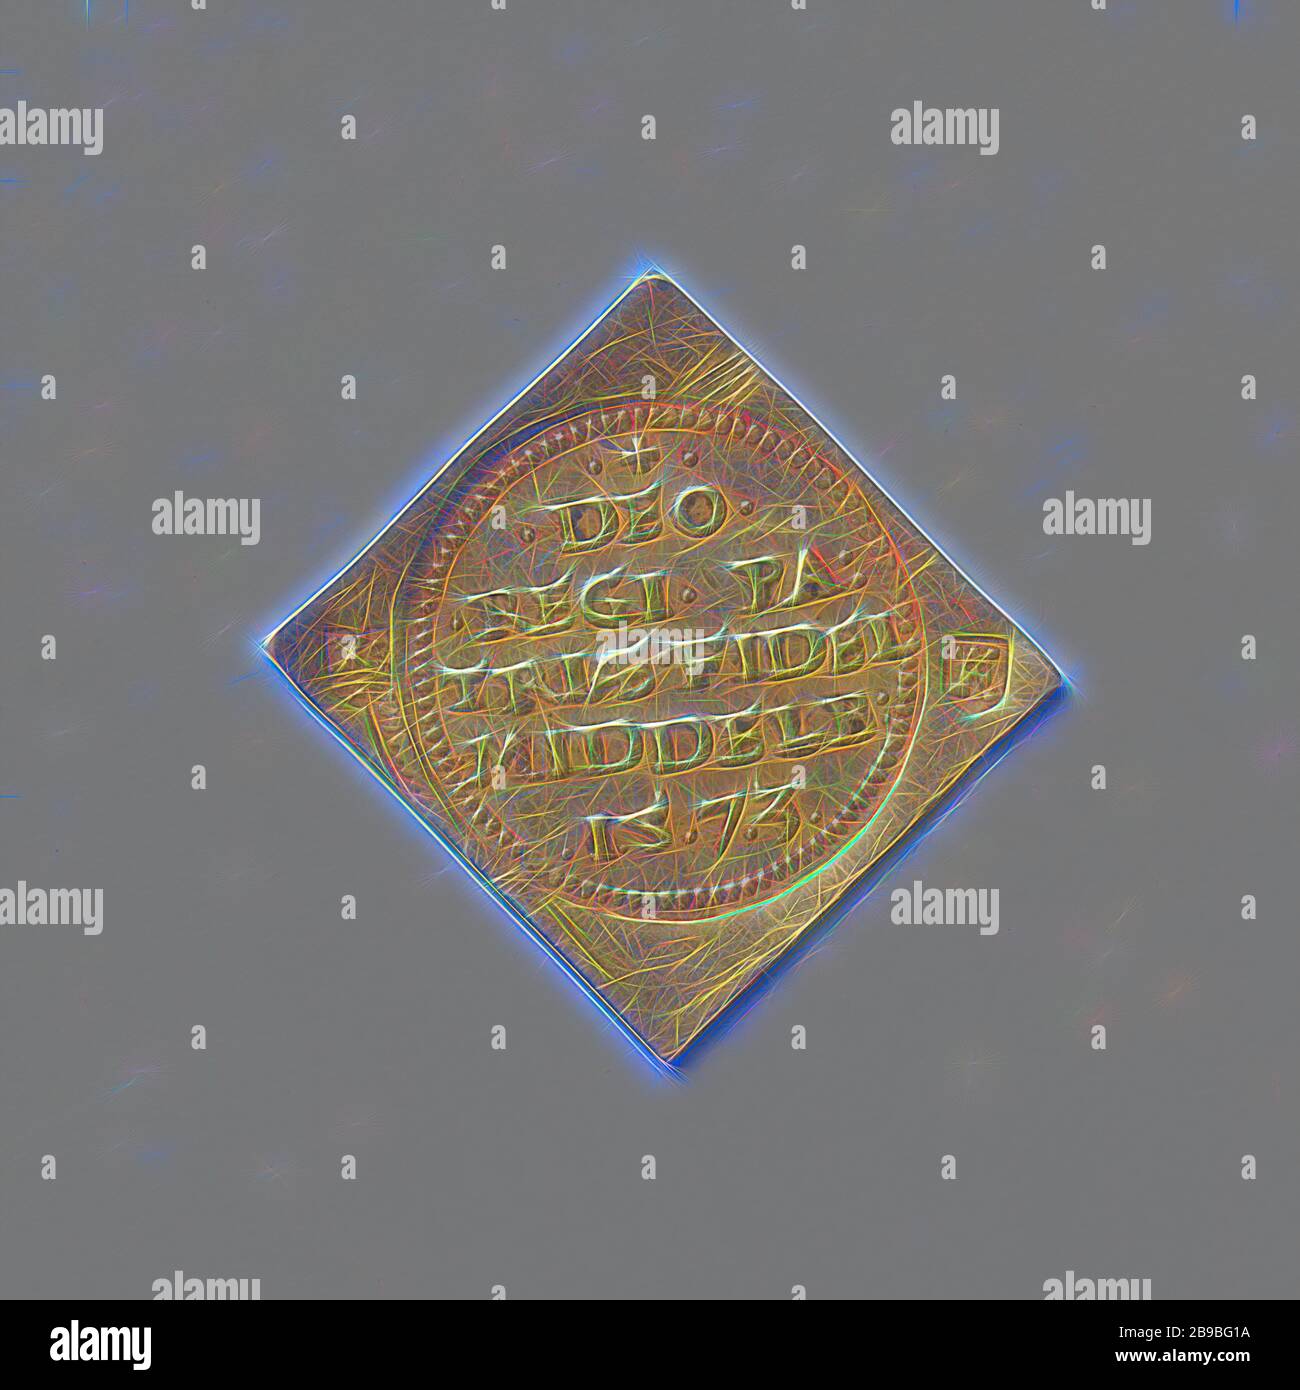 Assedio di Middelburg, moneta di emergenza a forma di diamante. Fronte: Tre francobolli l'uno accanto all'altro: Al centro: Iscrizione in bordo di perla rotonda, stemma di Stato sinistro, destra: Stemma della città. Indietro: Bianco, Middelburg, anonimo, 20-Jan-1574, oro (metallo), sorprendente (metallurgia), h 2,7 cm × w 2,7 cm × w 3,34 gr, Reimagined by Gibon, disegno di calore allegro di luminosità e raggi di luce radianza. Arte classica reinventata con un tocco moderno. La fotografia ispirata al futurismo, che abbraccia l'energia dinamica della tecnologia moderna, del movimento, della velocità e rivoluziona la cultura. Foto Stock